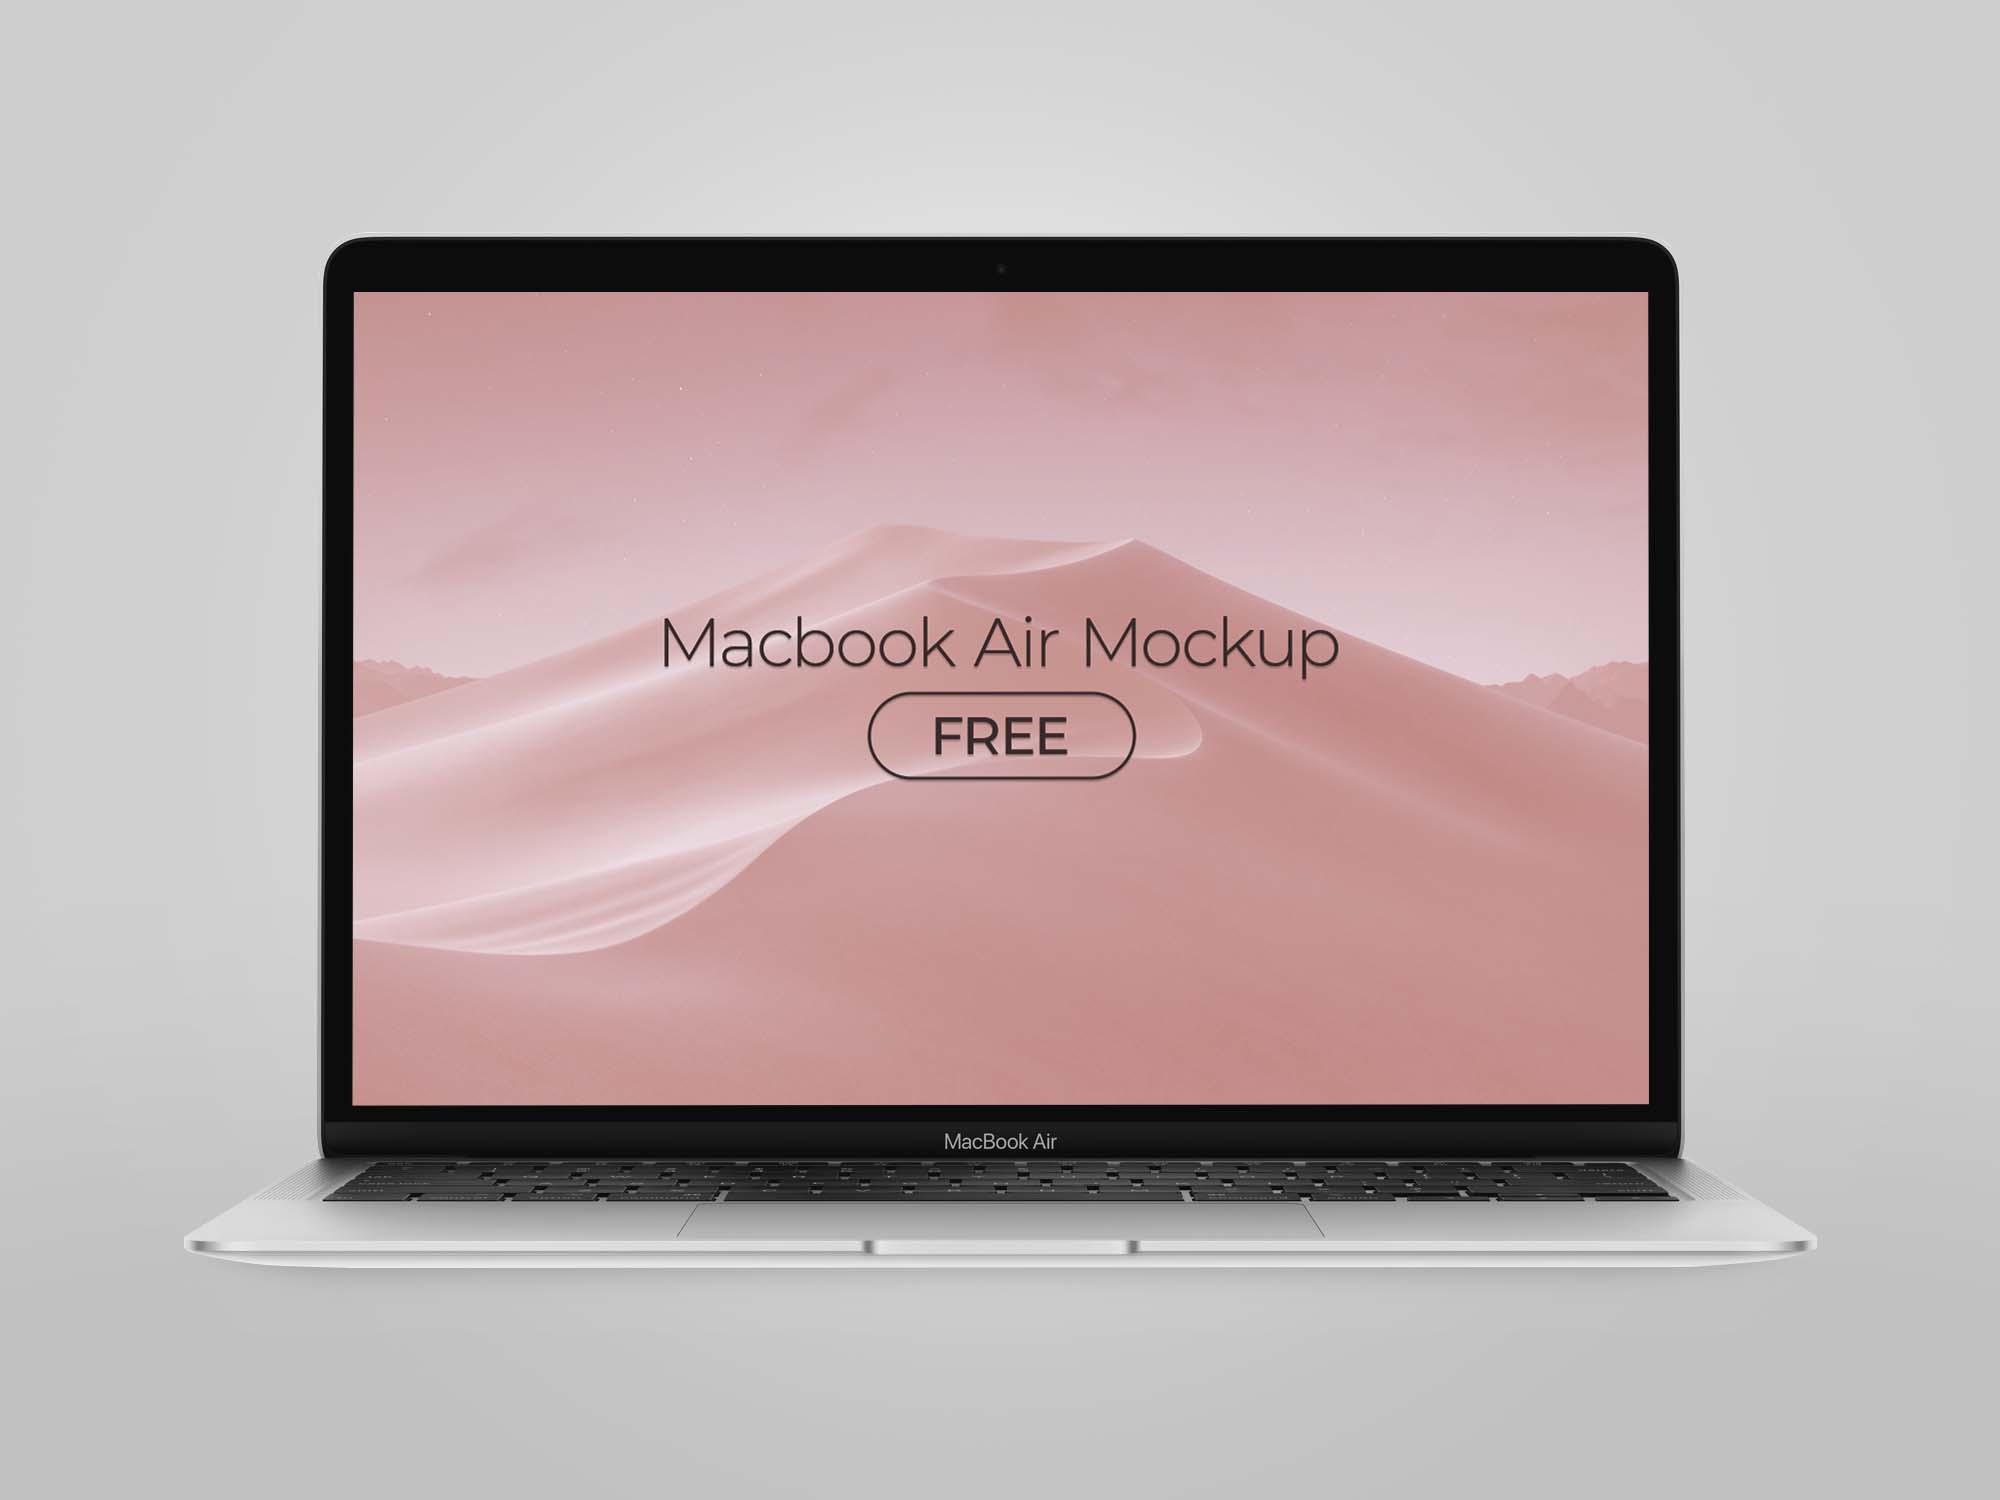 MacBook Air Mockup 2020